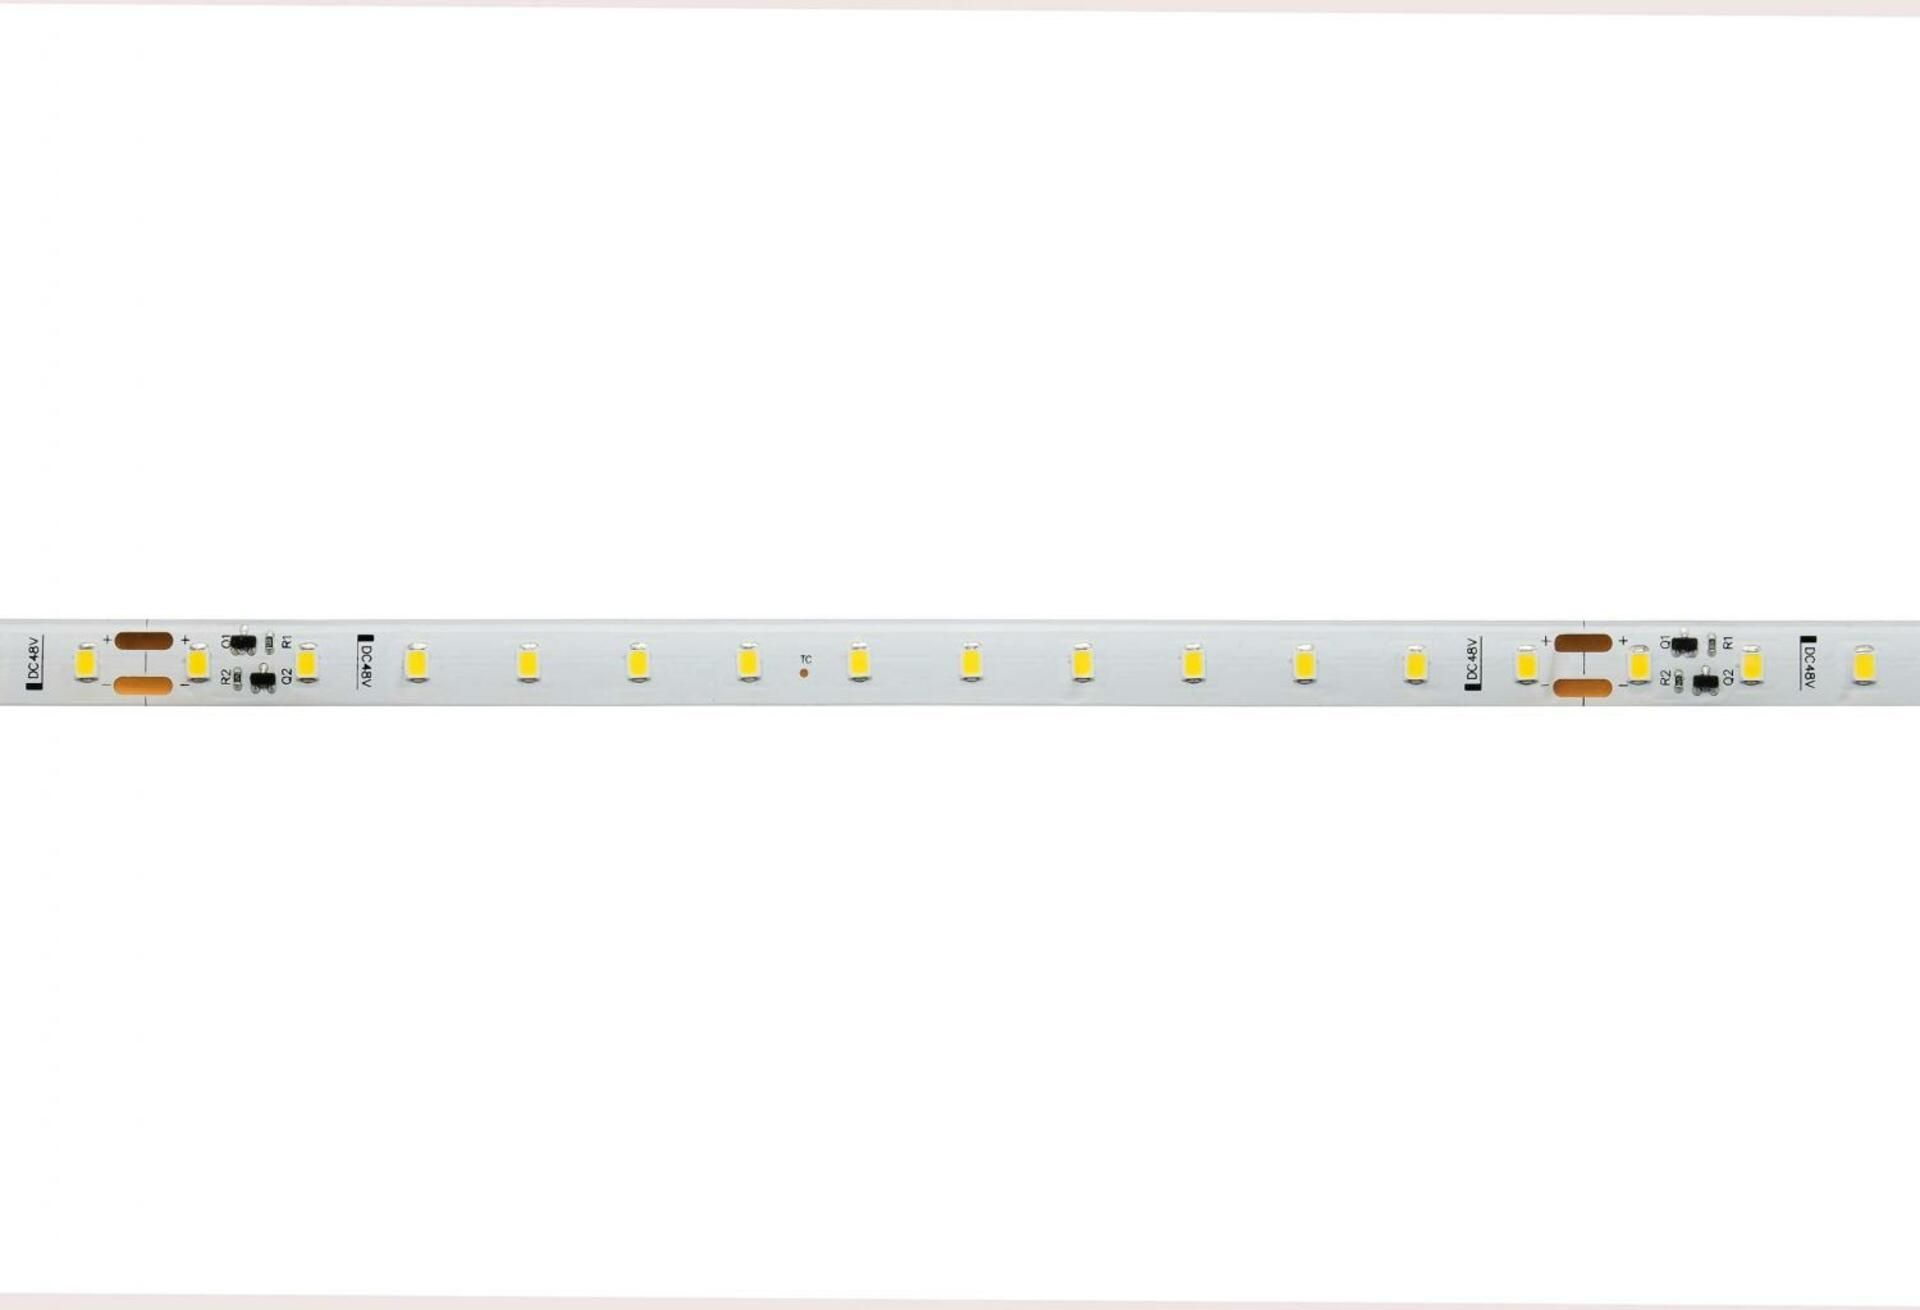 Light Impressions Deko-Light flexibilní LED pásek 2835-78-48V-4000K-50m-Silikon 48V DC 20,50 W 4000 K 1810 lm 50000 840340